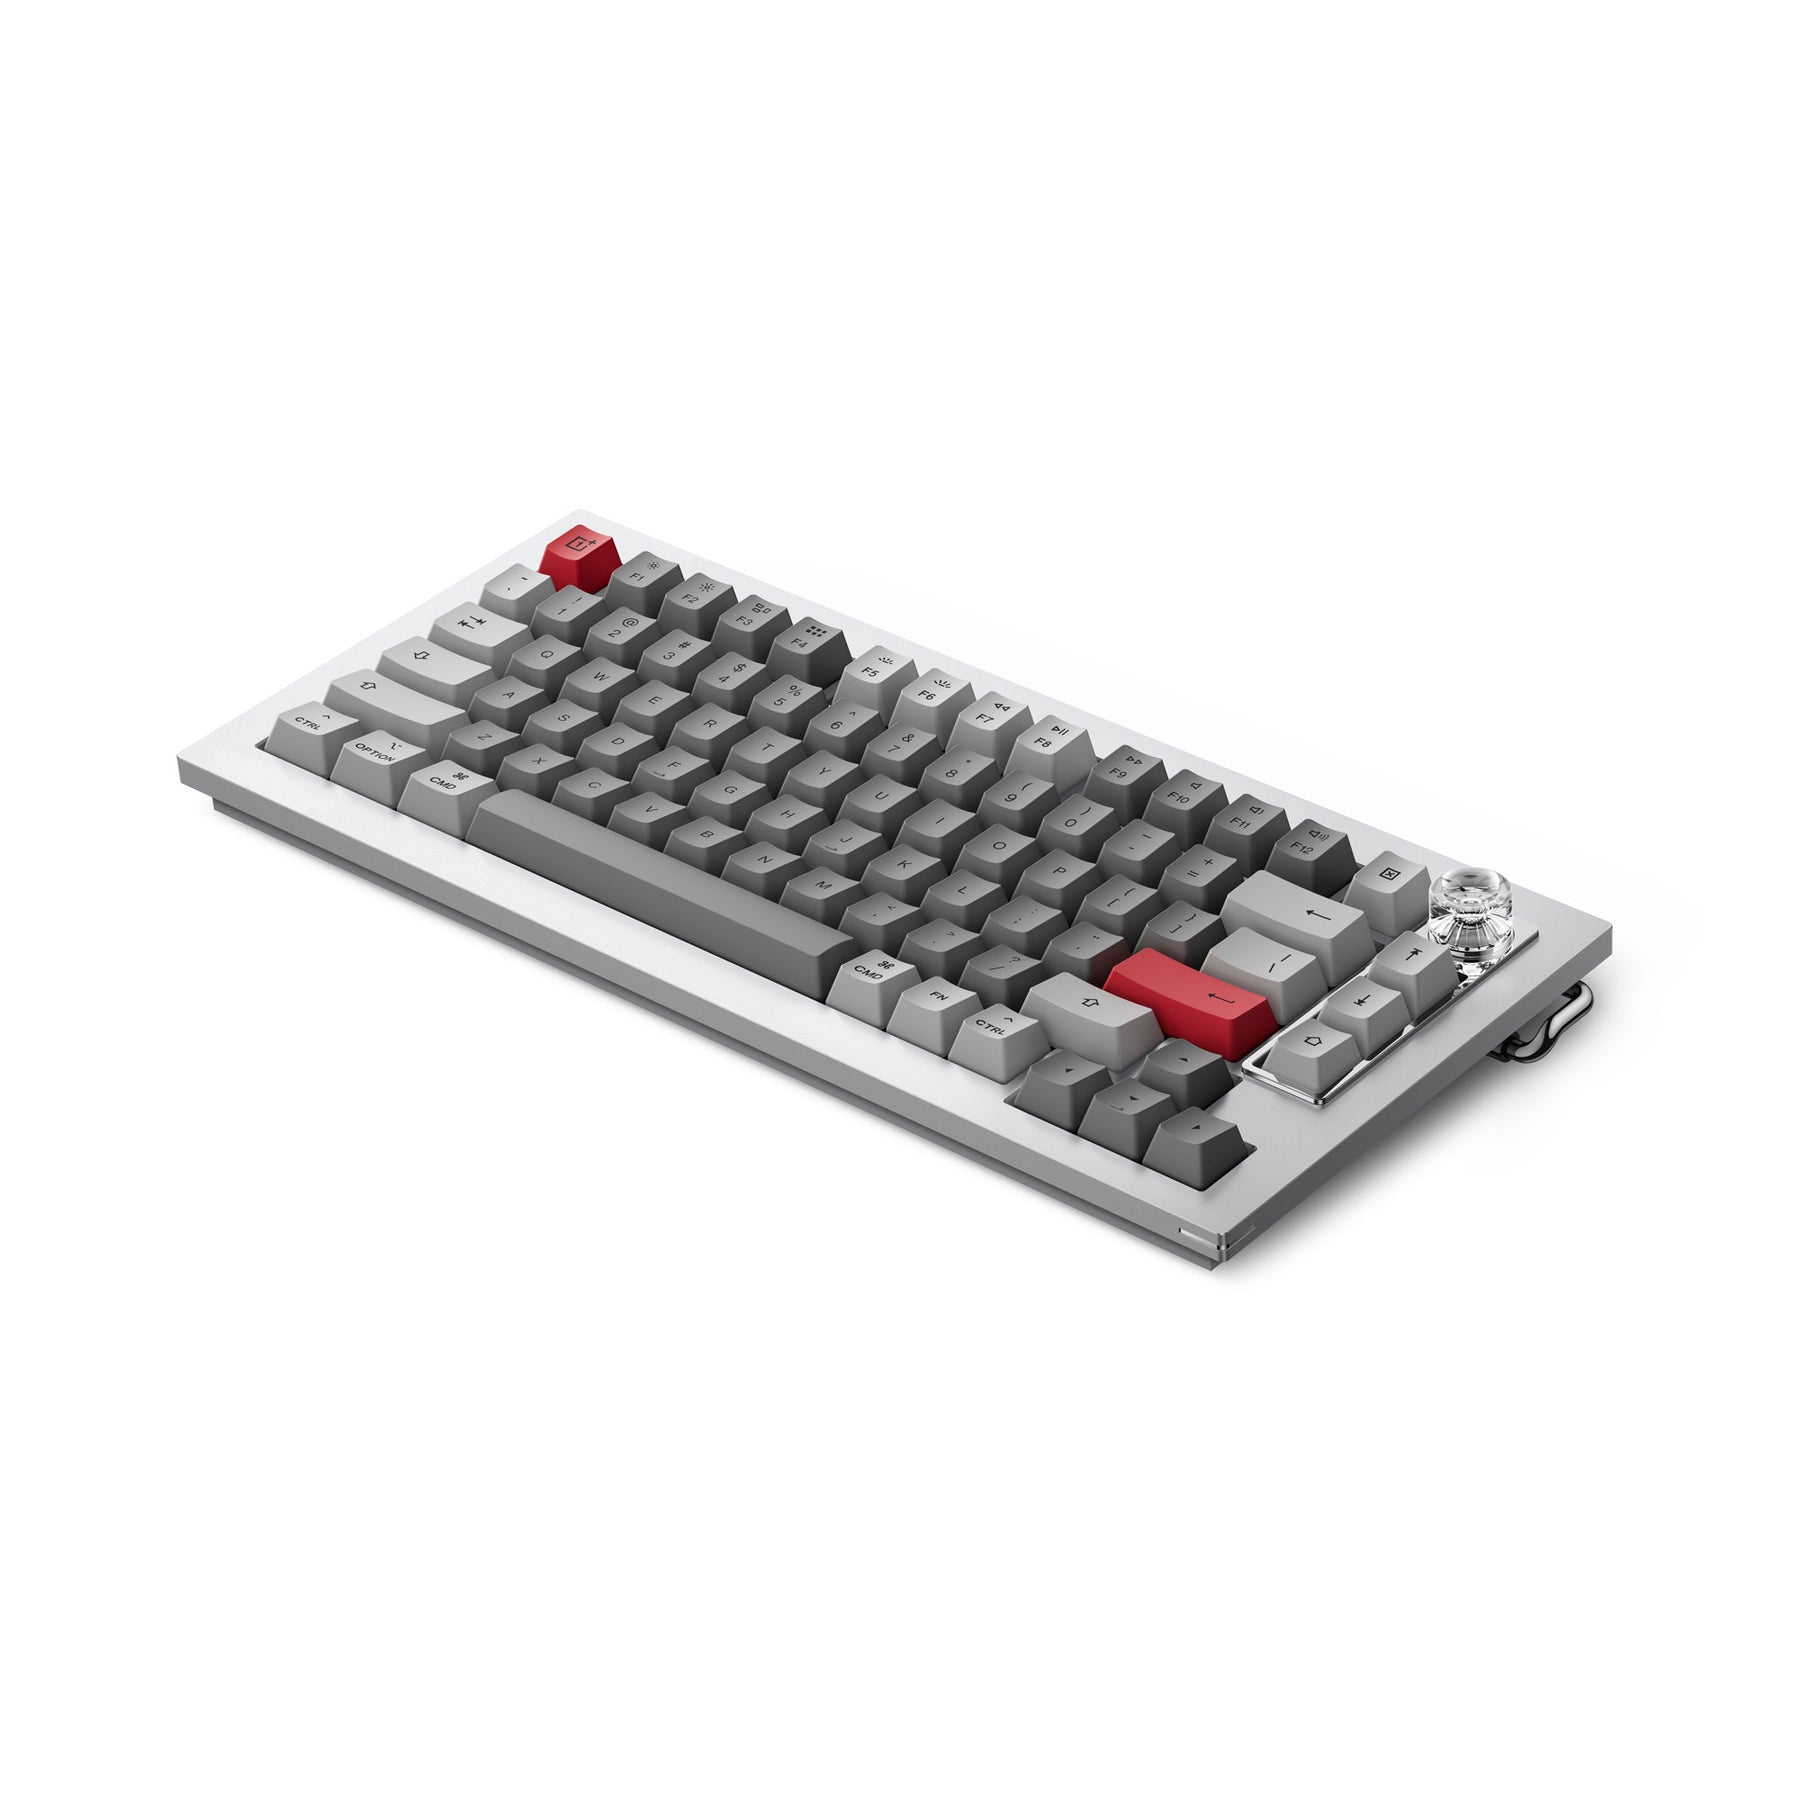 Keyboard 81 Pro By Keychron / One Plusキーボード配列英語